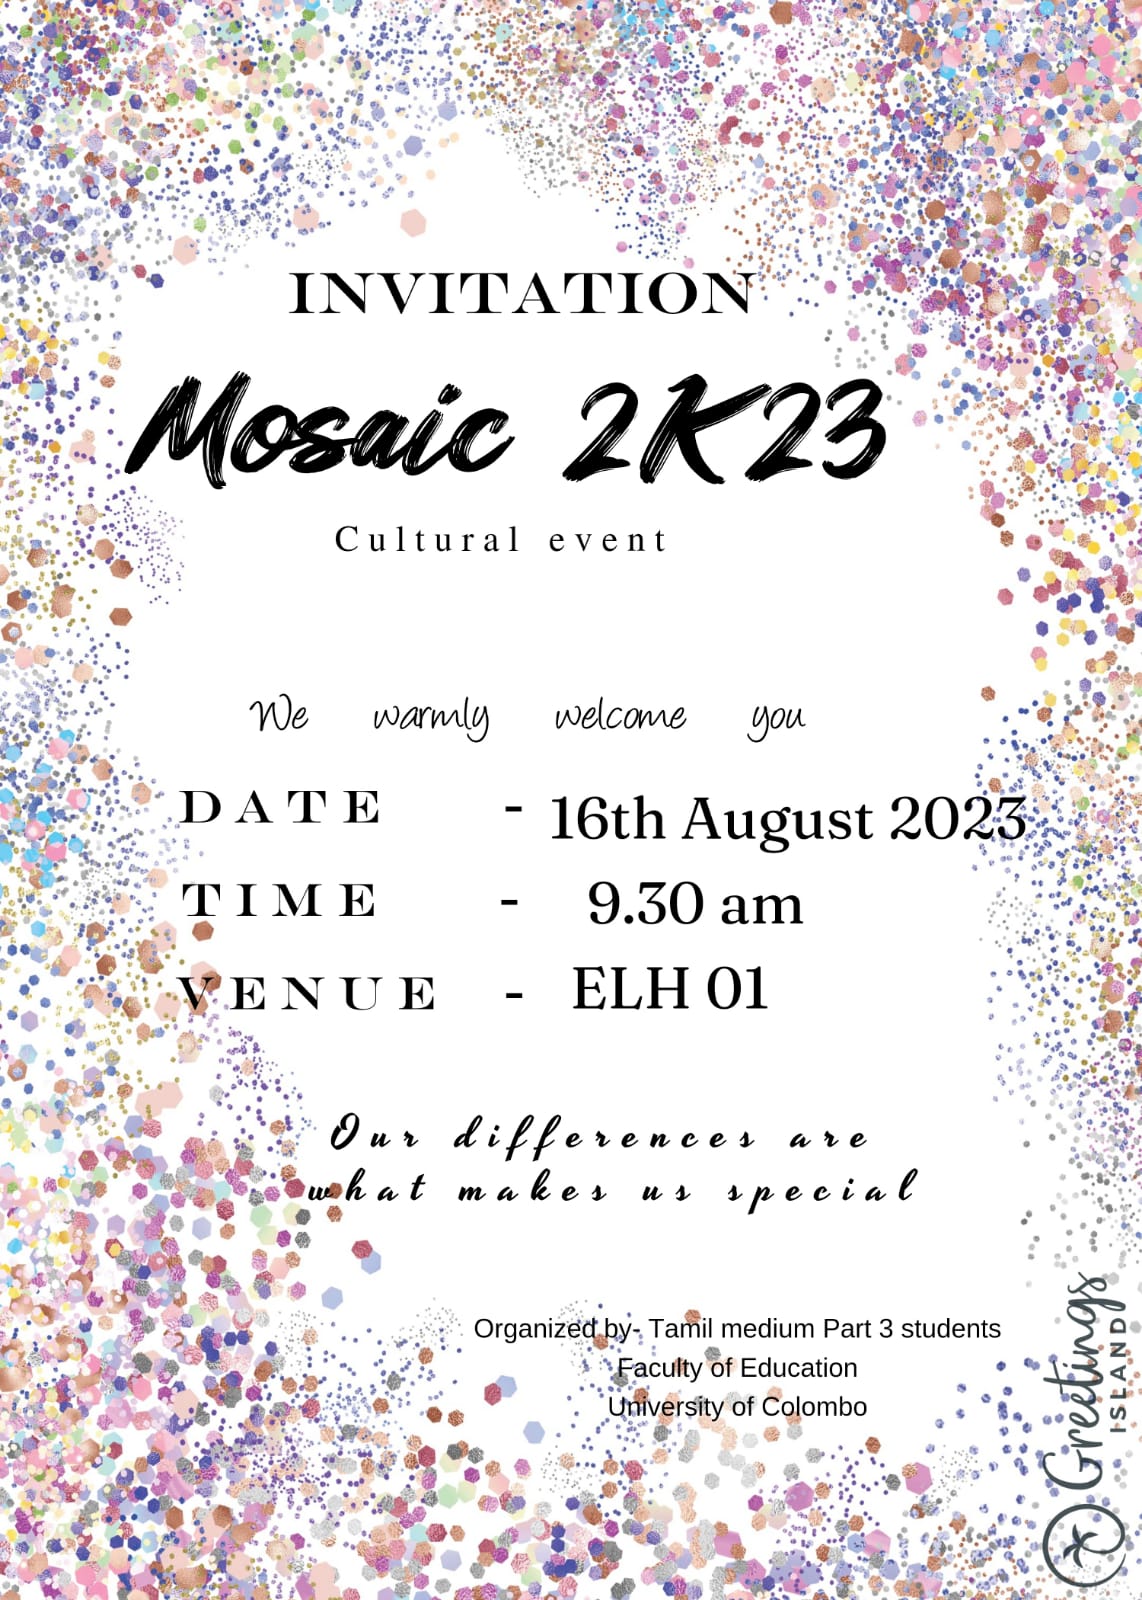 MOSAIC 2023 – A Cultural Event